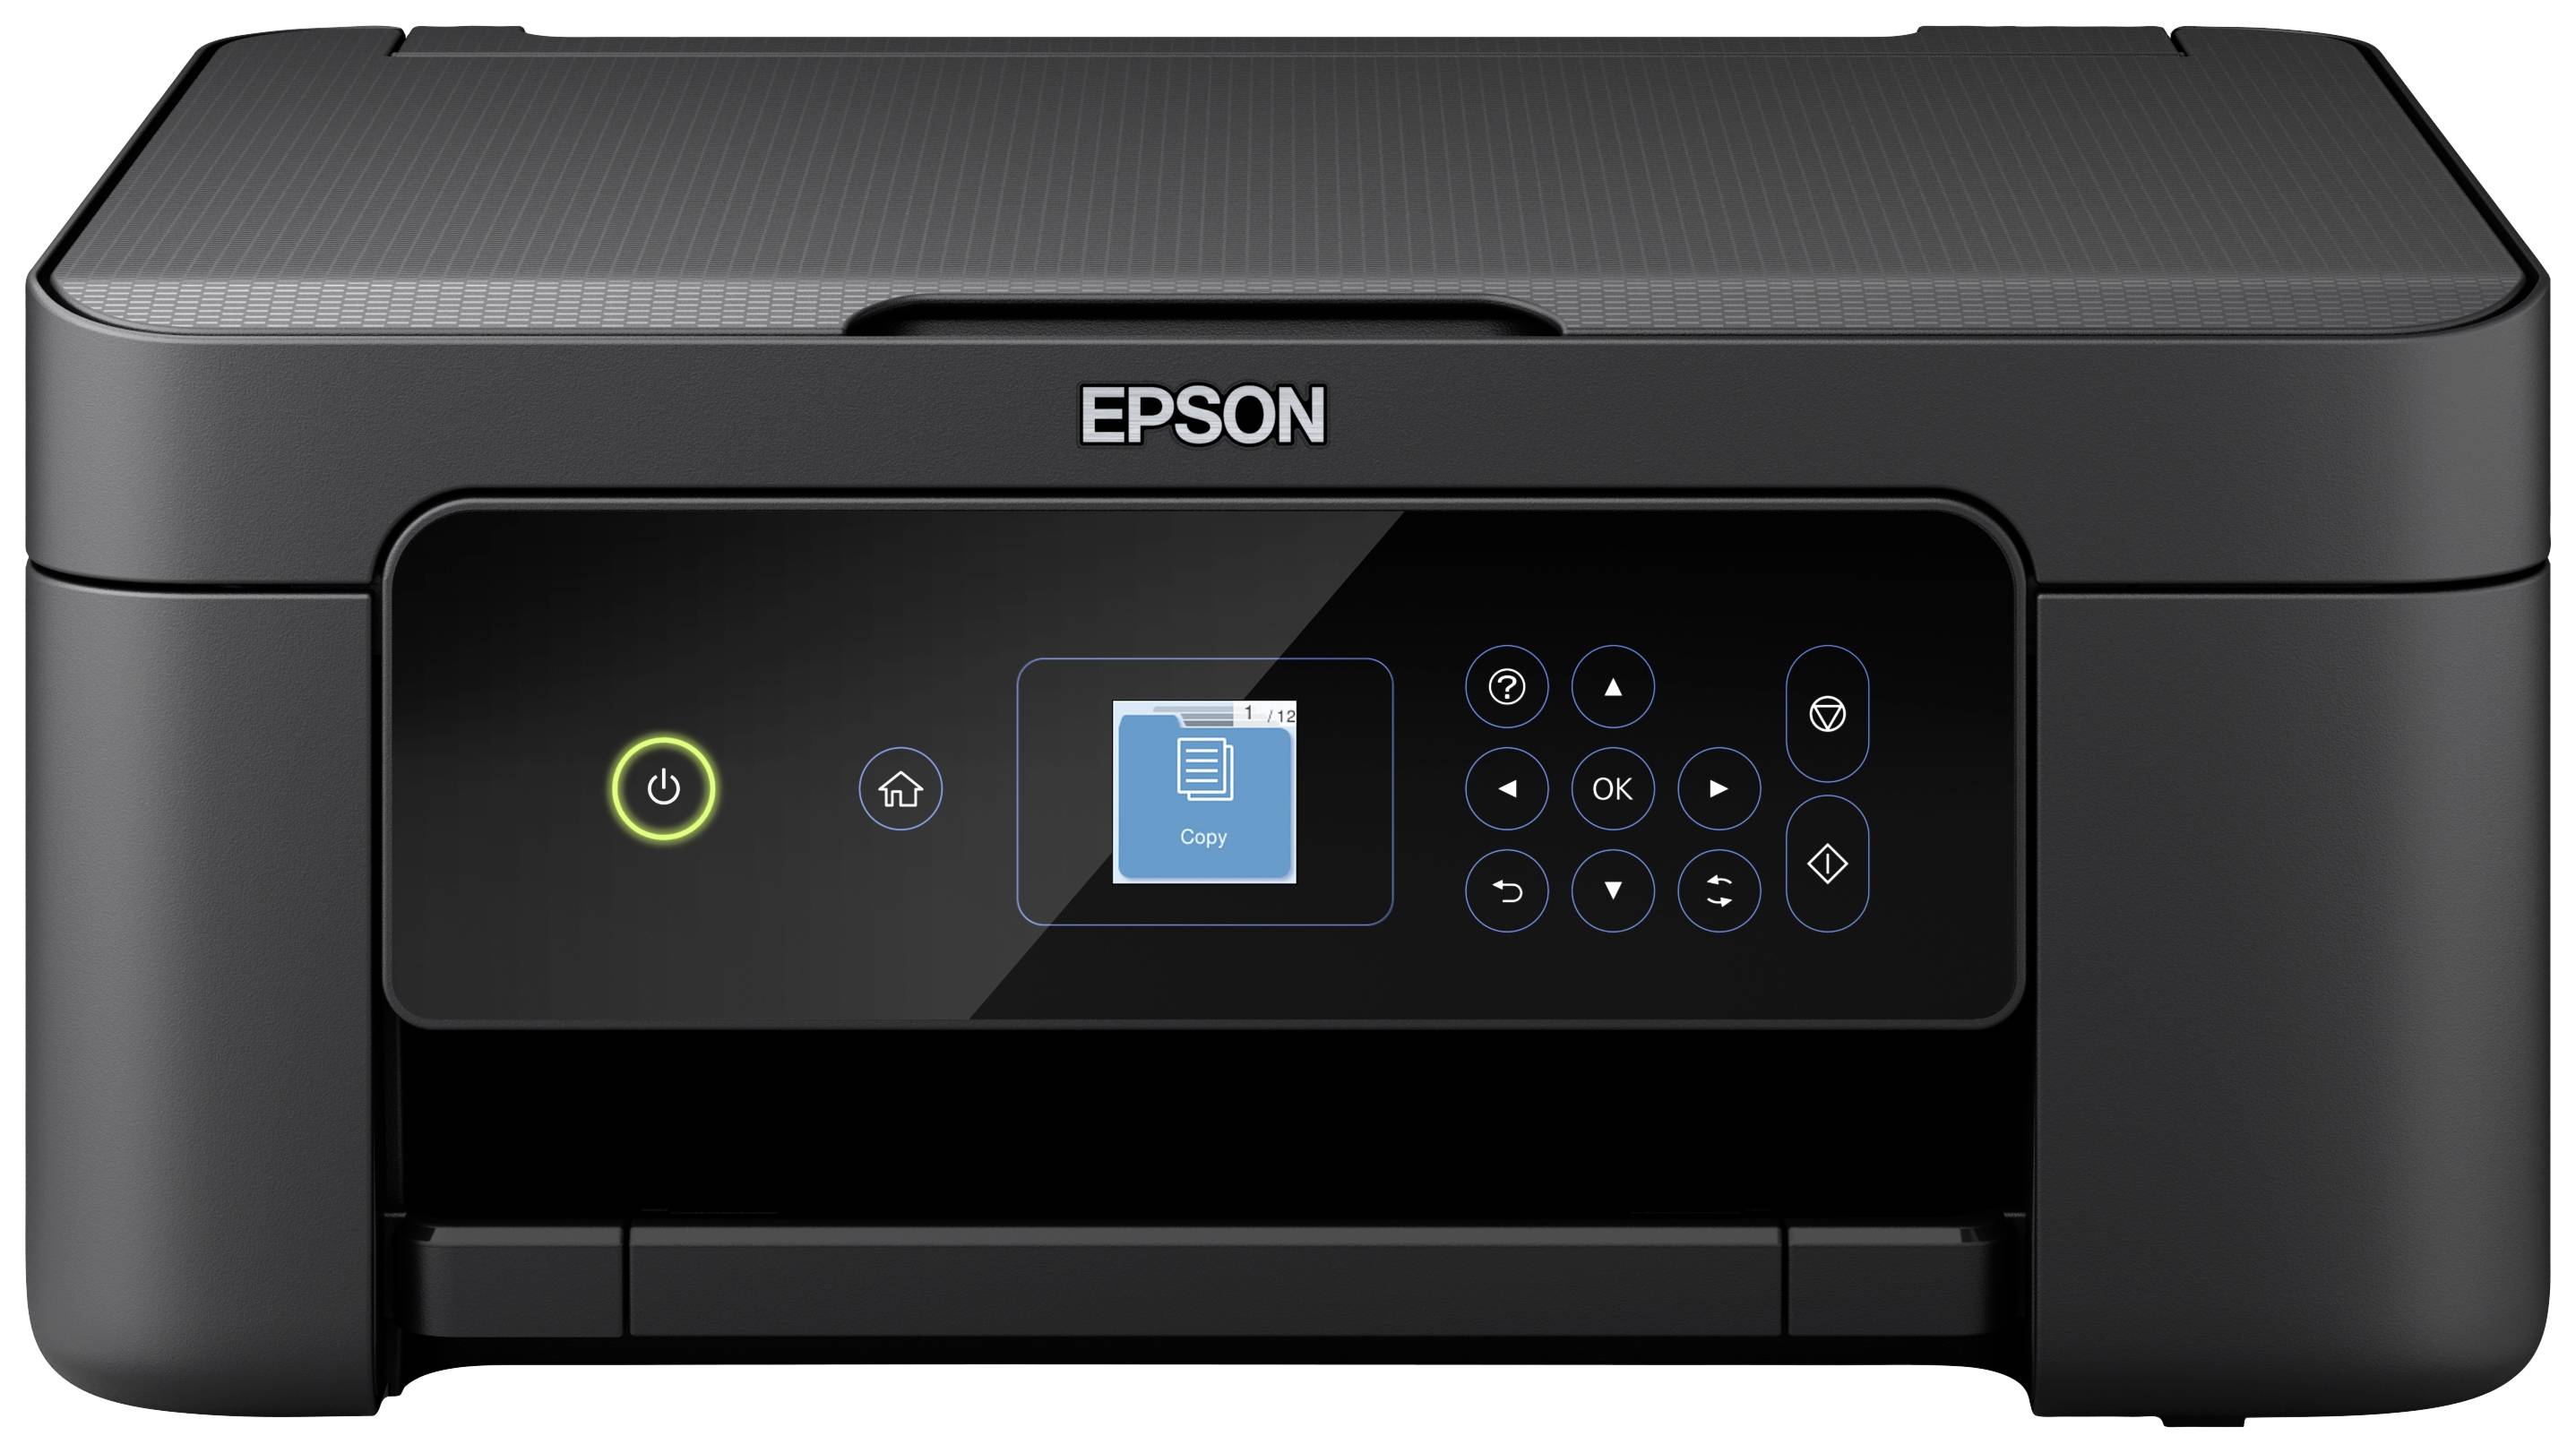 Epson Expression Home kaufen USB, Drucker, Tintenstrahl Farb XP-3205 WLAN A4 Kopierer Multifunktionsdrucker Duplex, Scanner